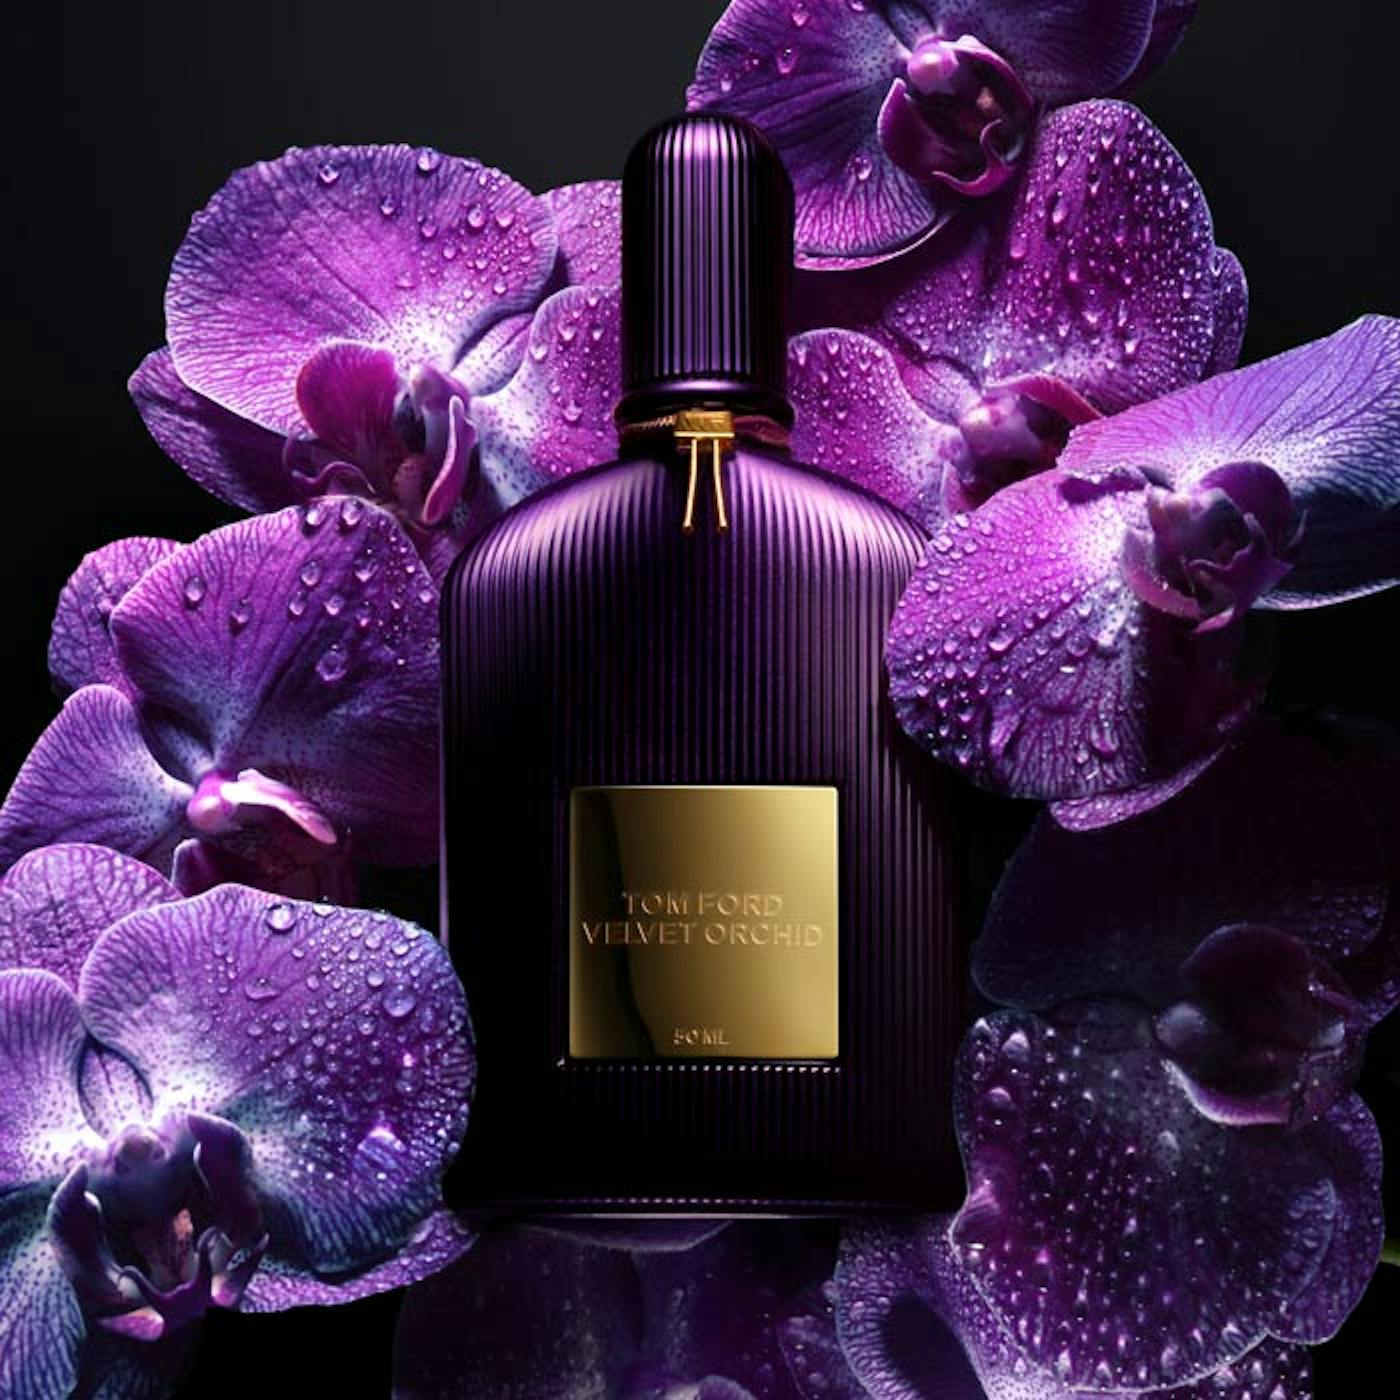 Tom Ford Velvet Orchid 30ml, Velvet Orchid Eau De Parfum